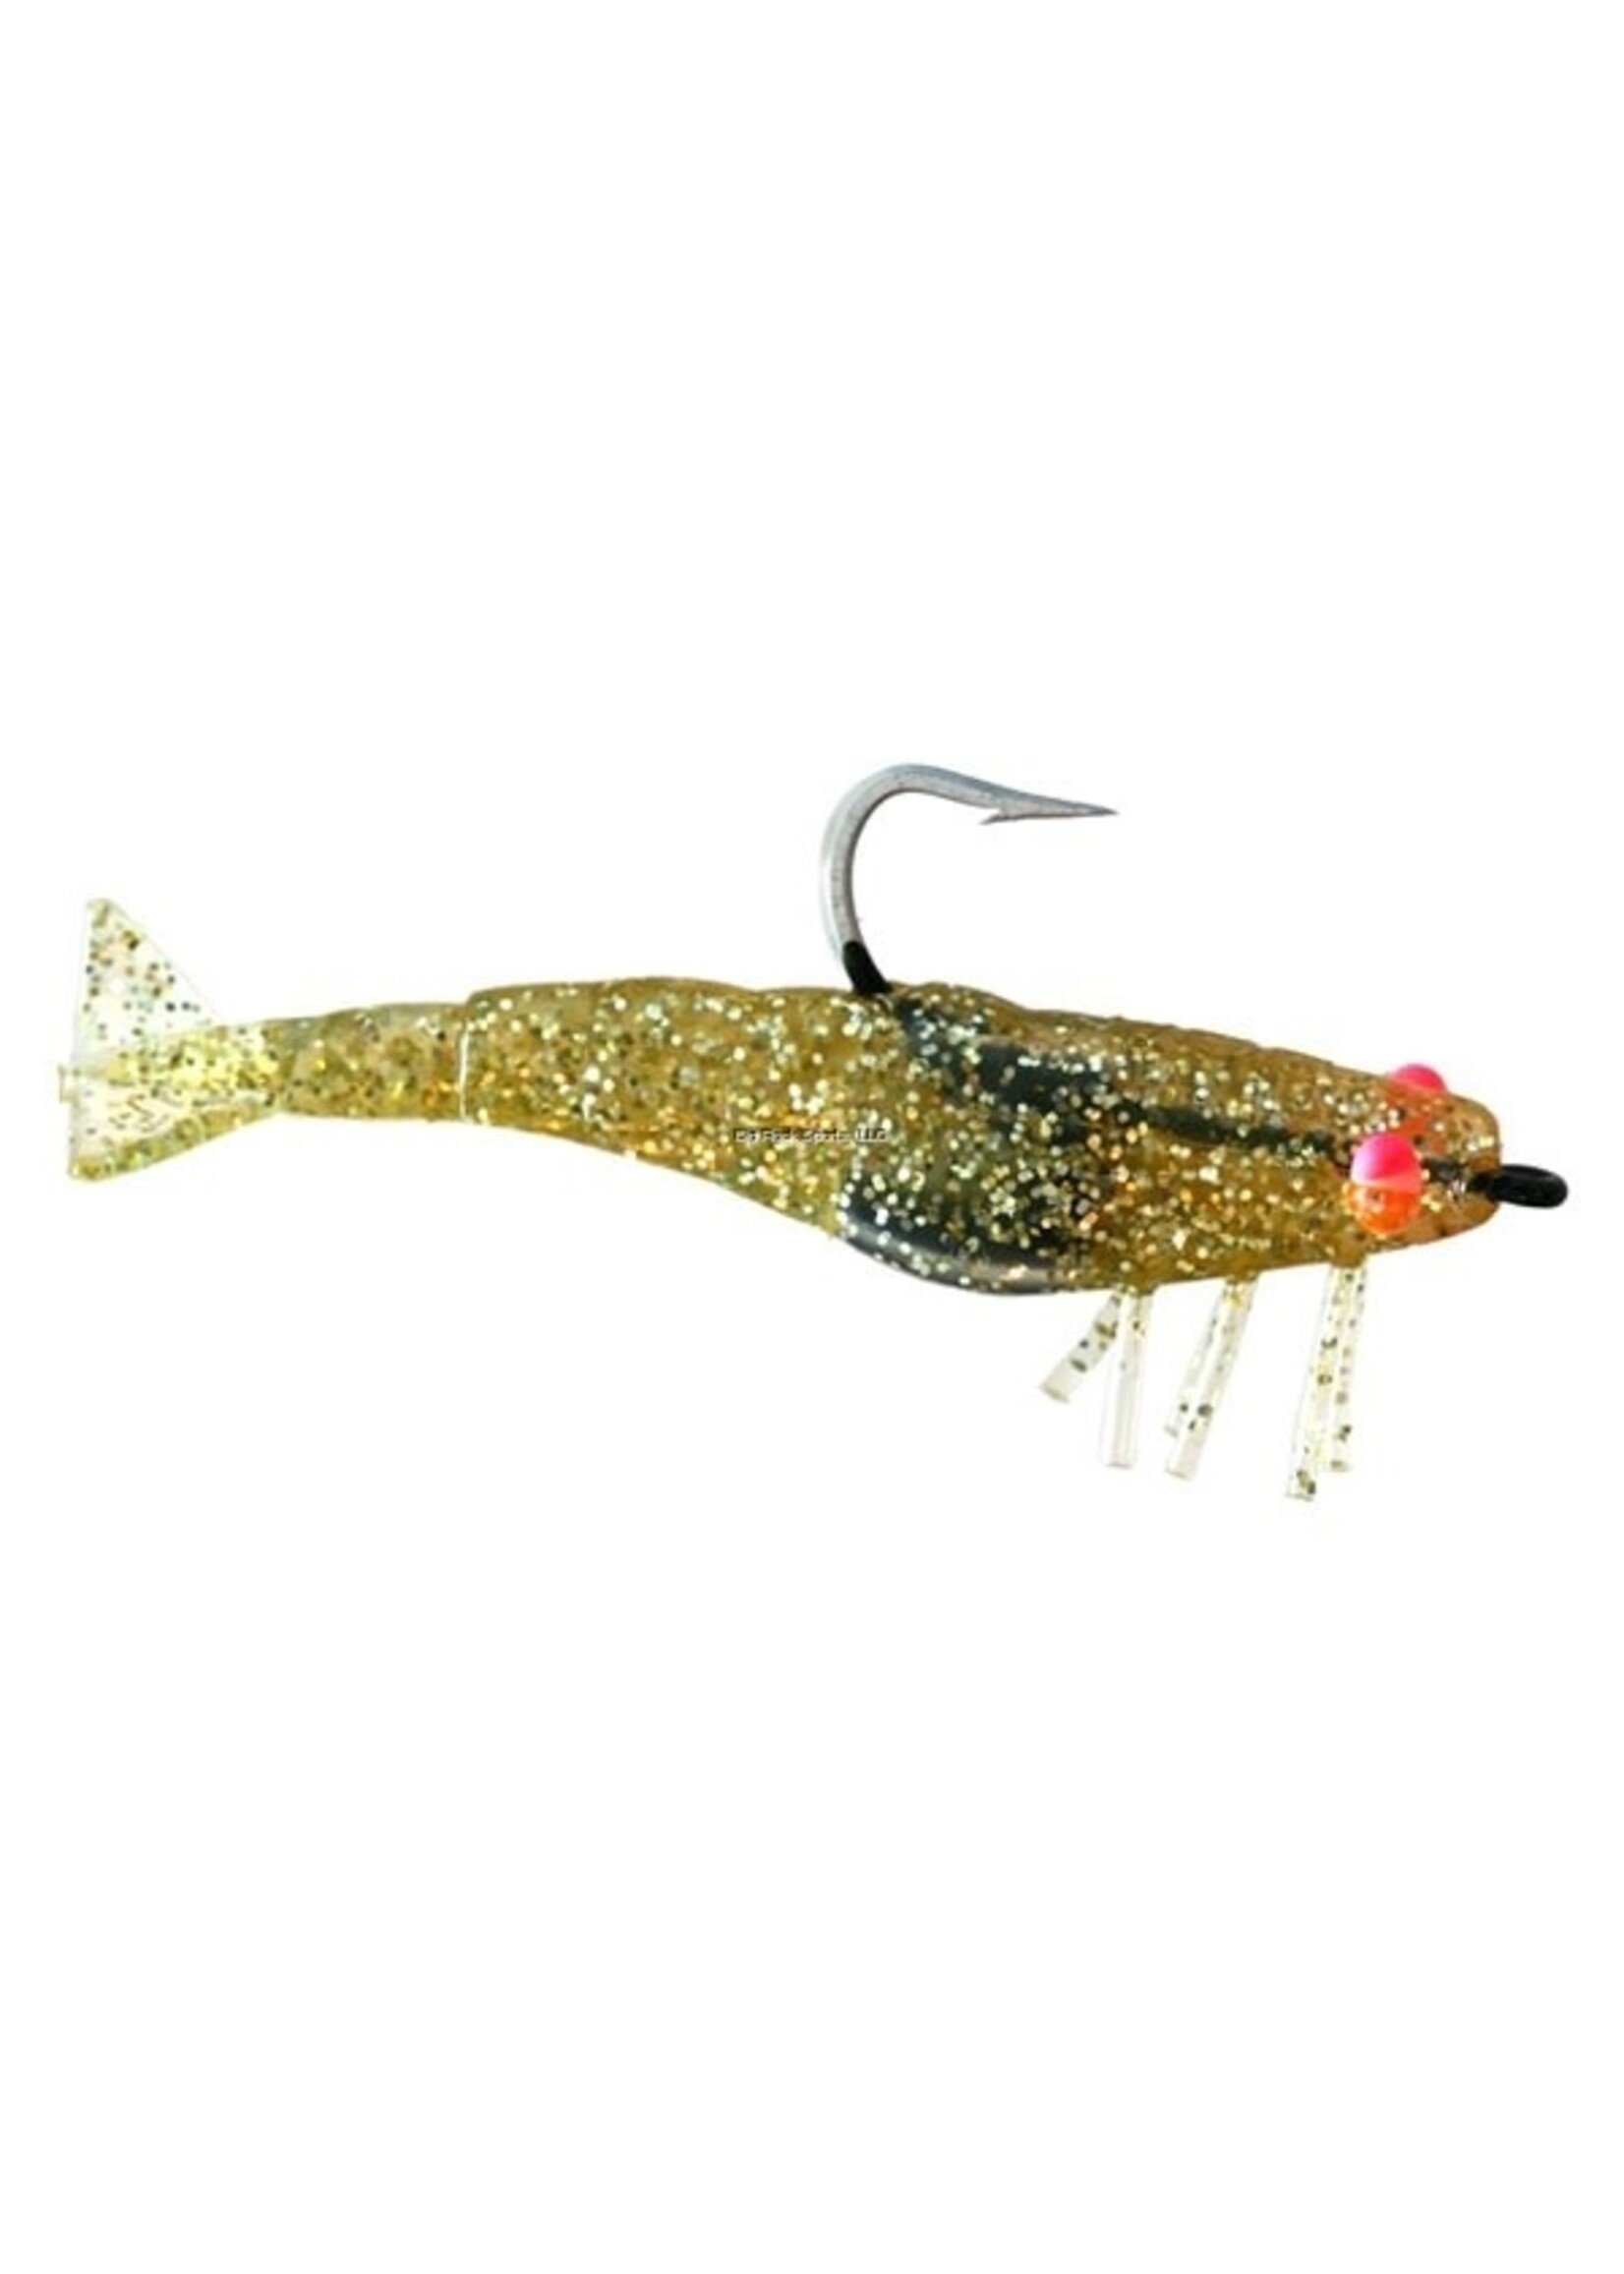 DOA DOA Shrimp Lure Gold Glitter 2.75"